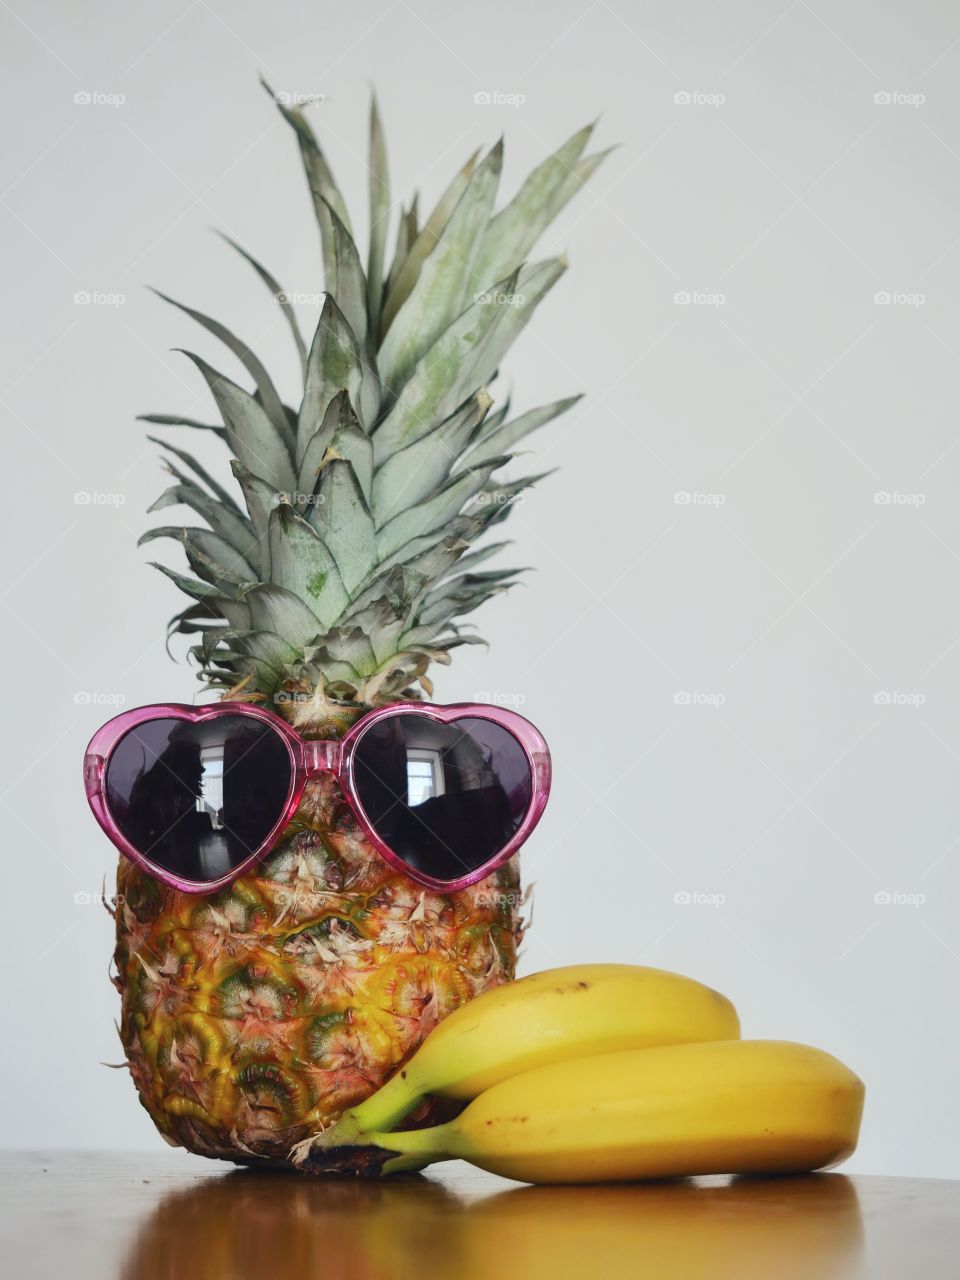 Pineapple and bananas